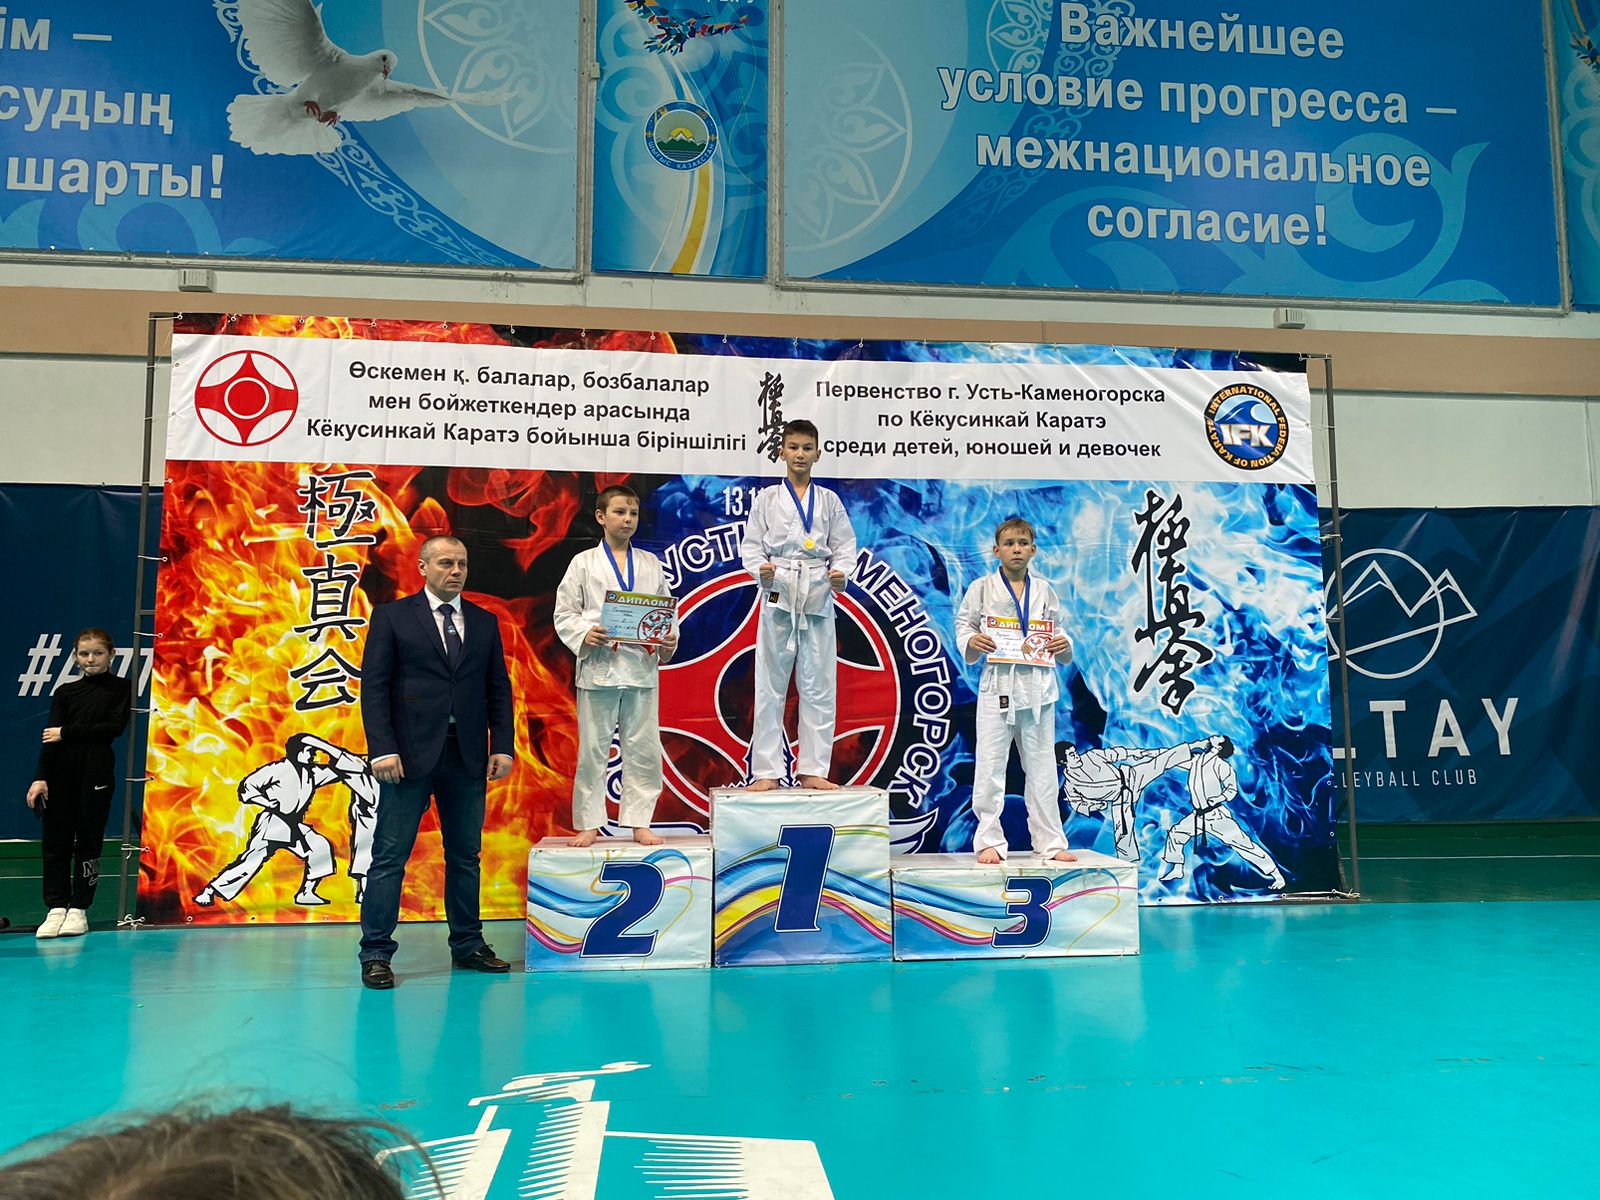 13 ноября прошло Первенство г. Усть-Каменогорска по Кёкусинкай каратэ среди детей, юношей и девушек в котором приняли участие спортсмены из г. Риддера.